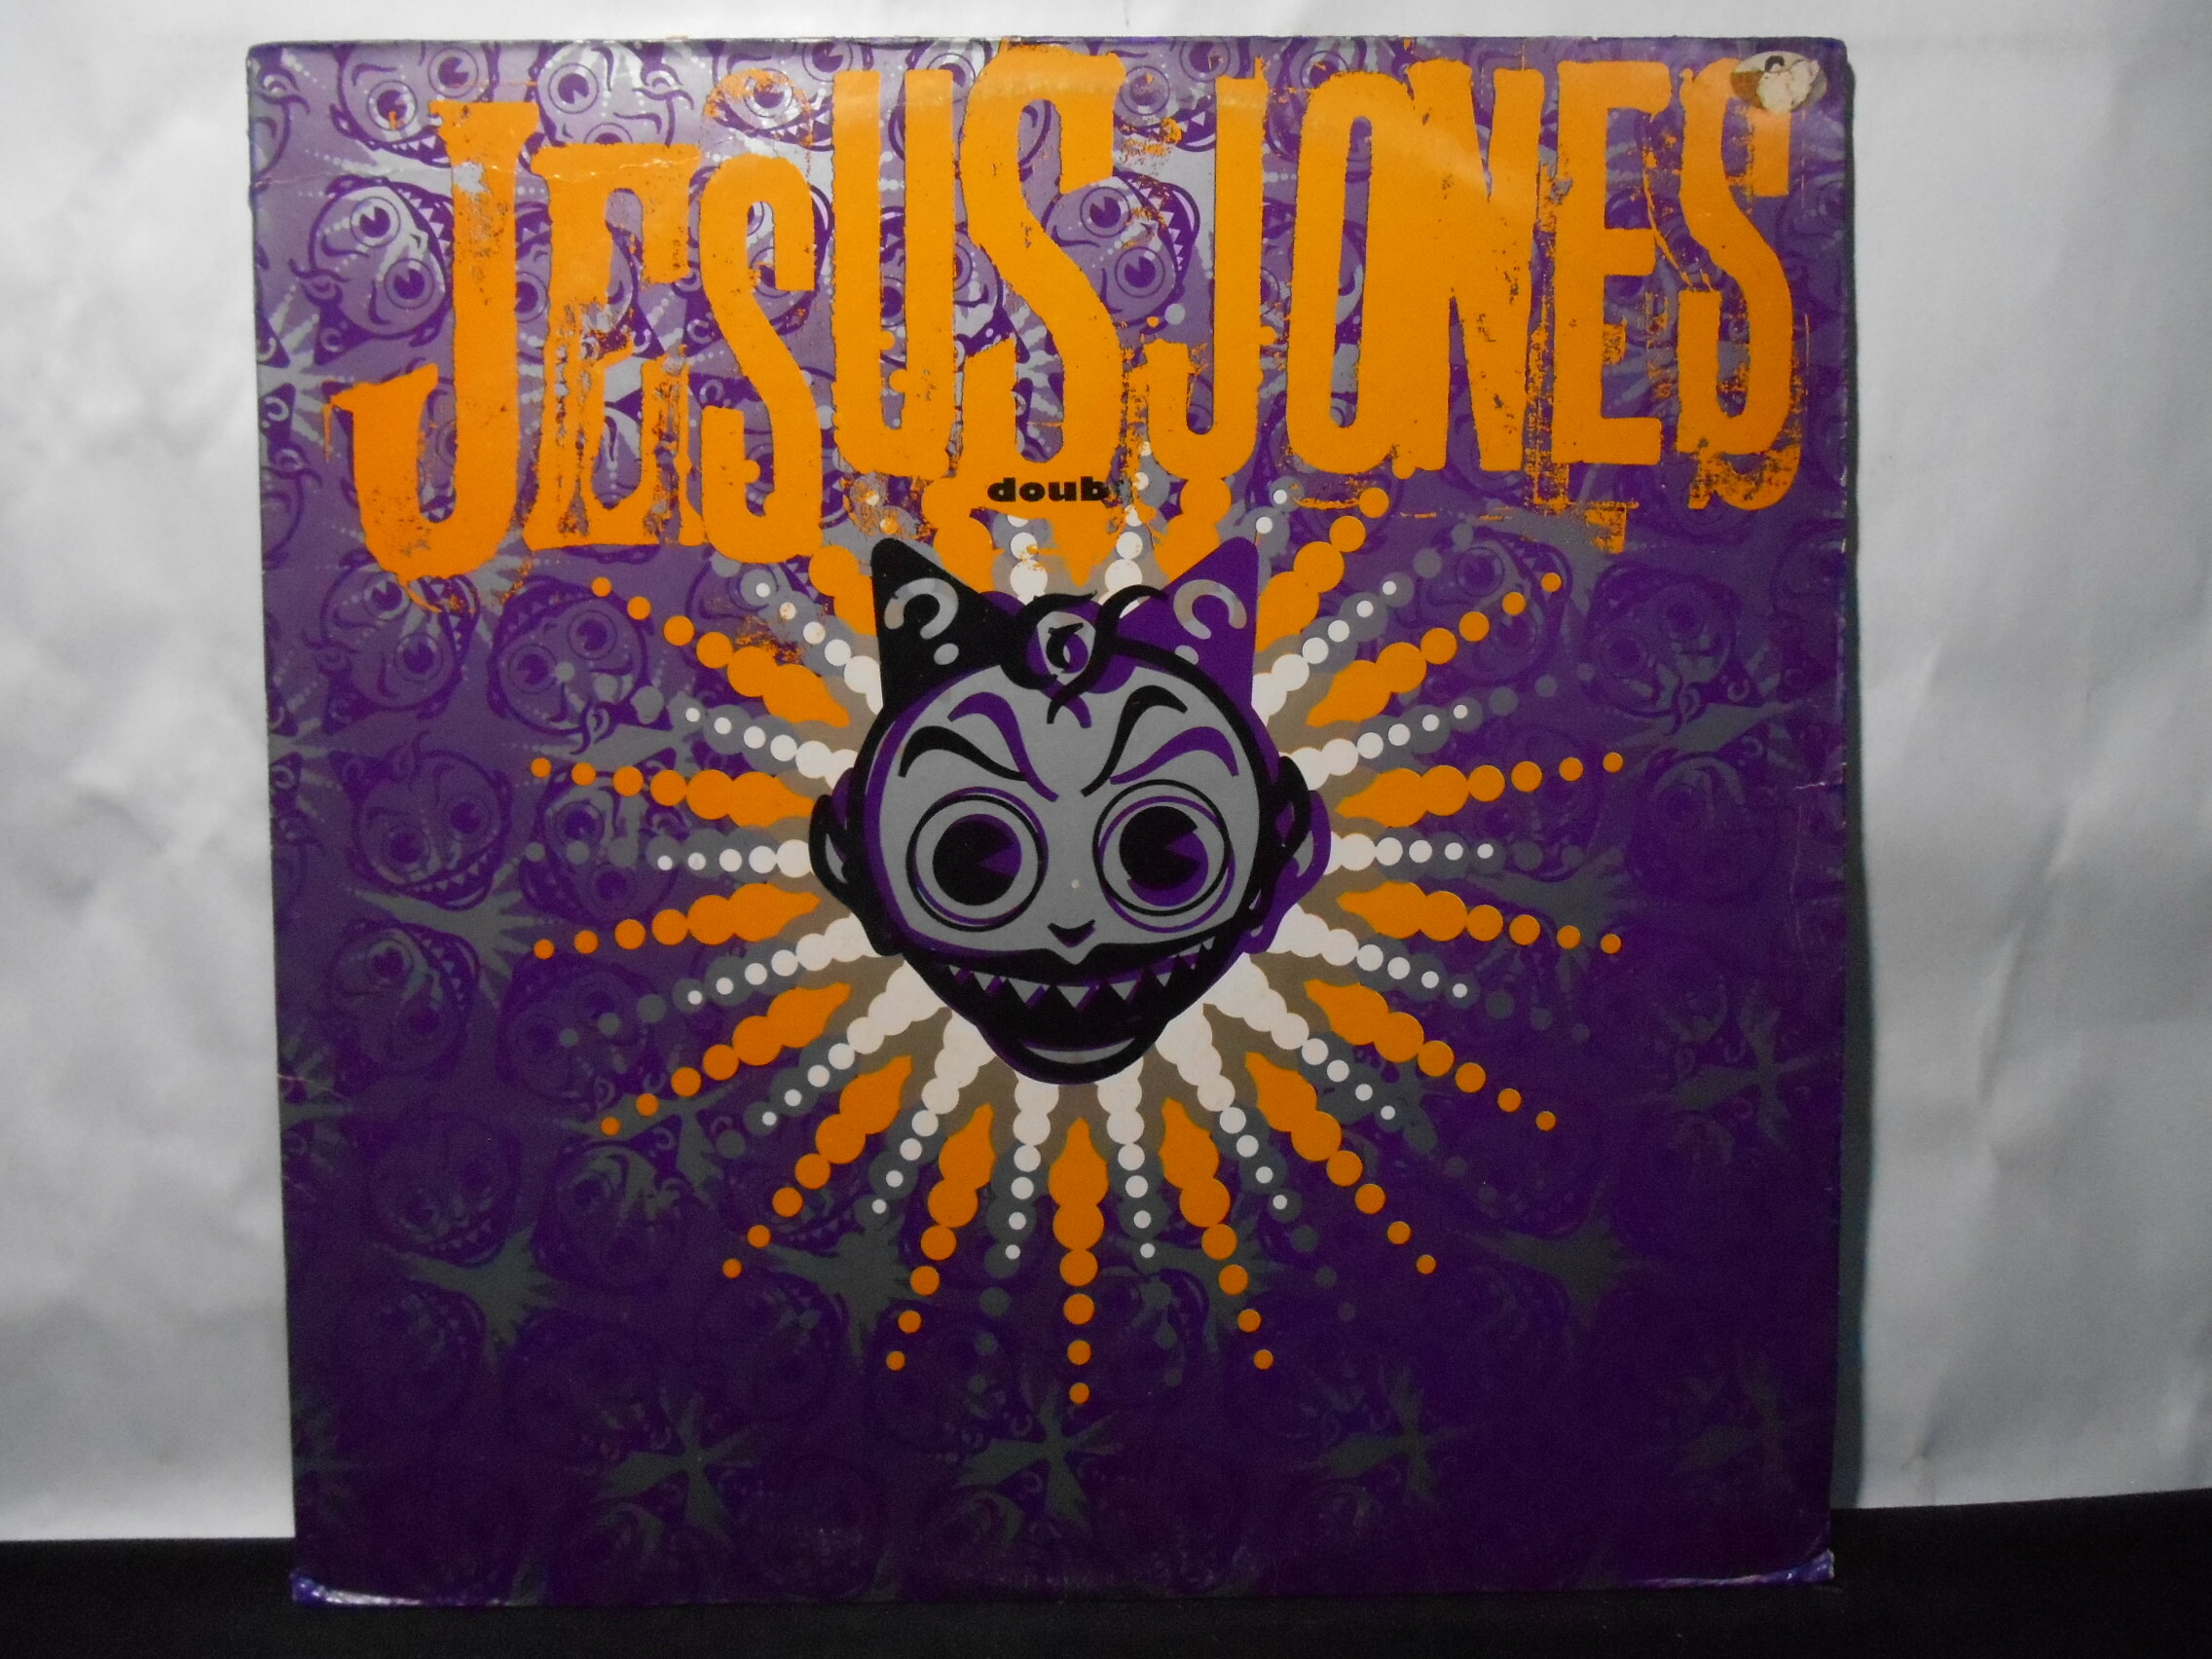 Vinil - Jesus Jones - Doubt